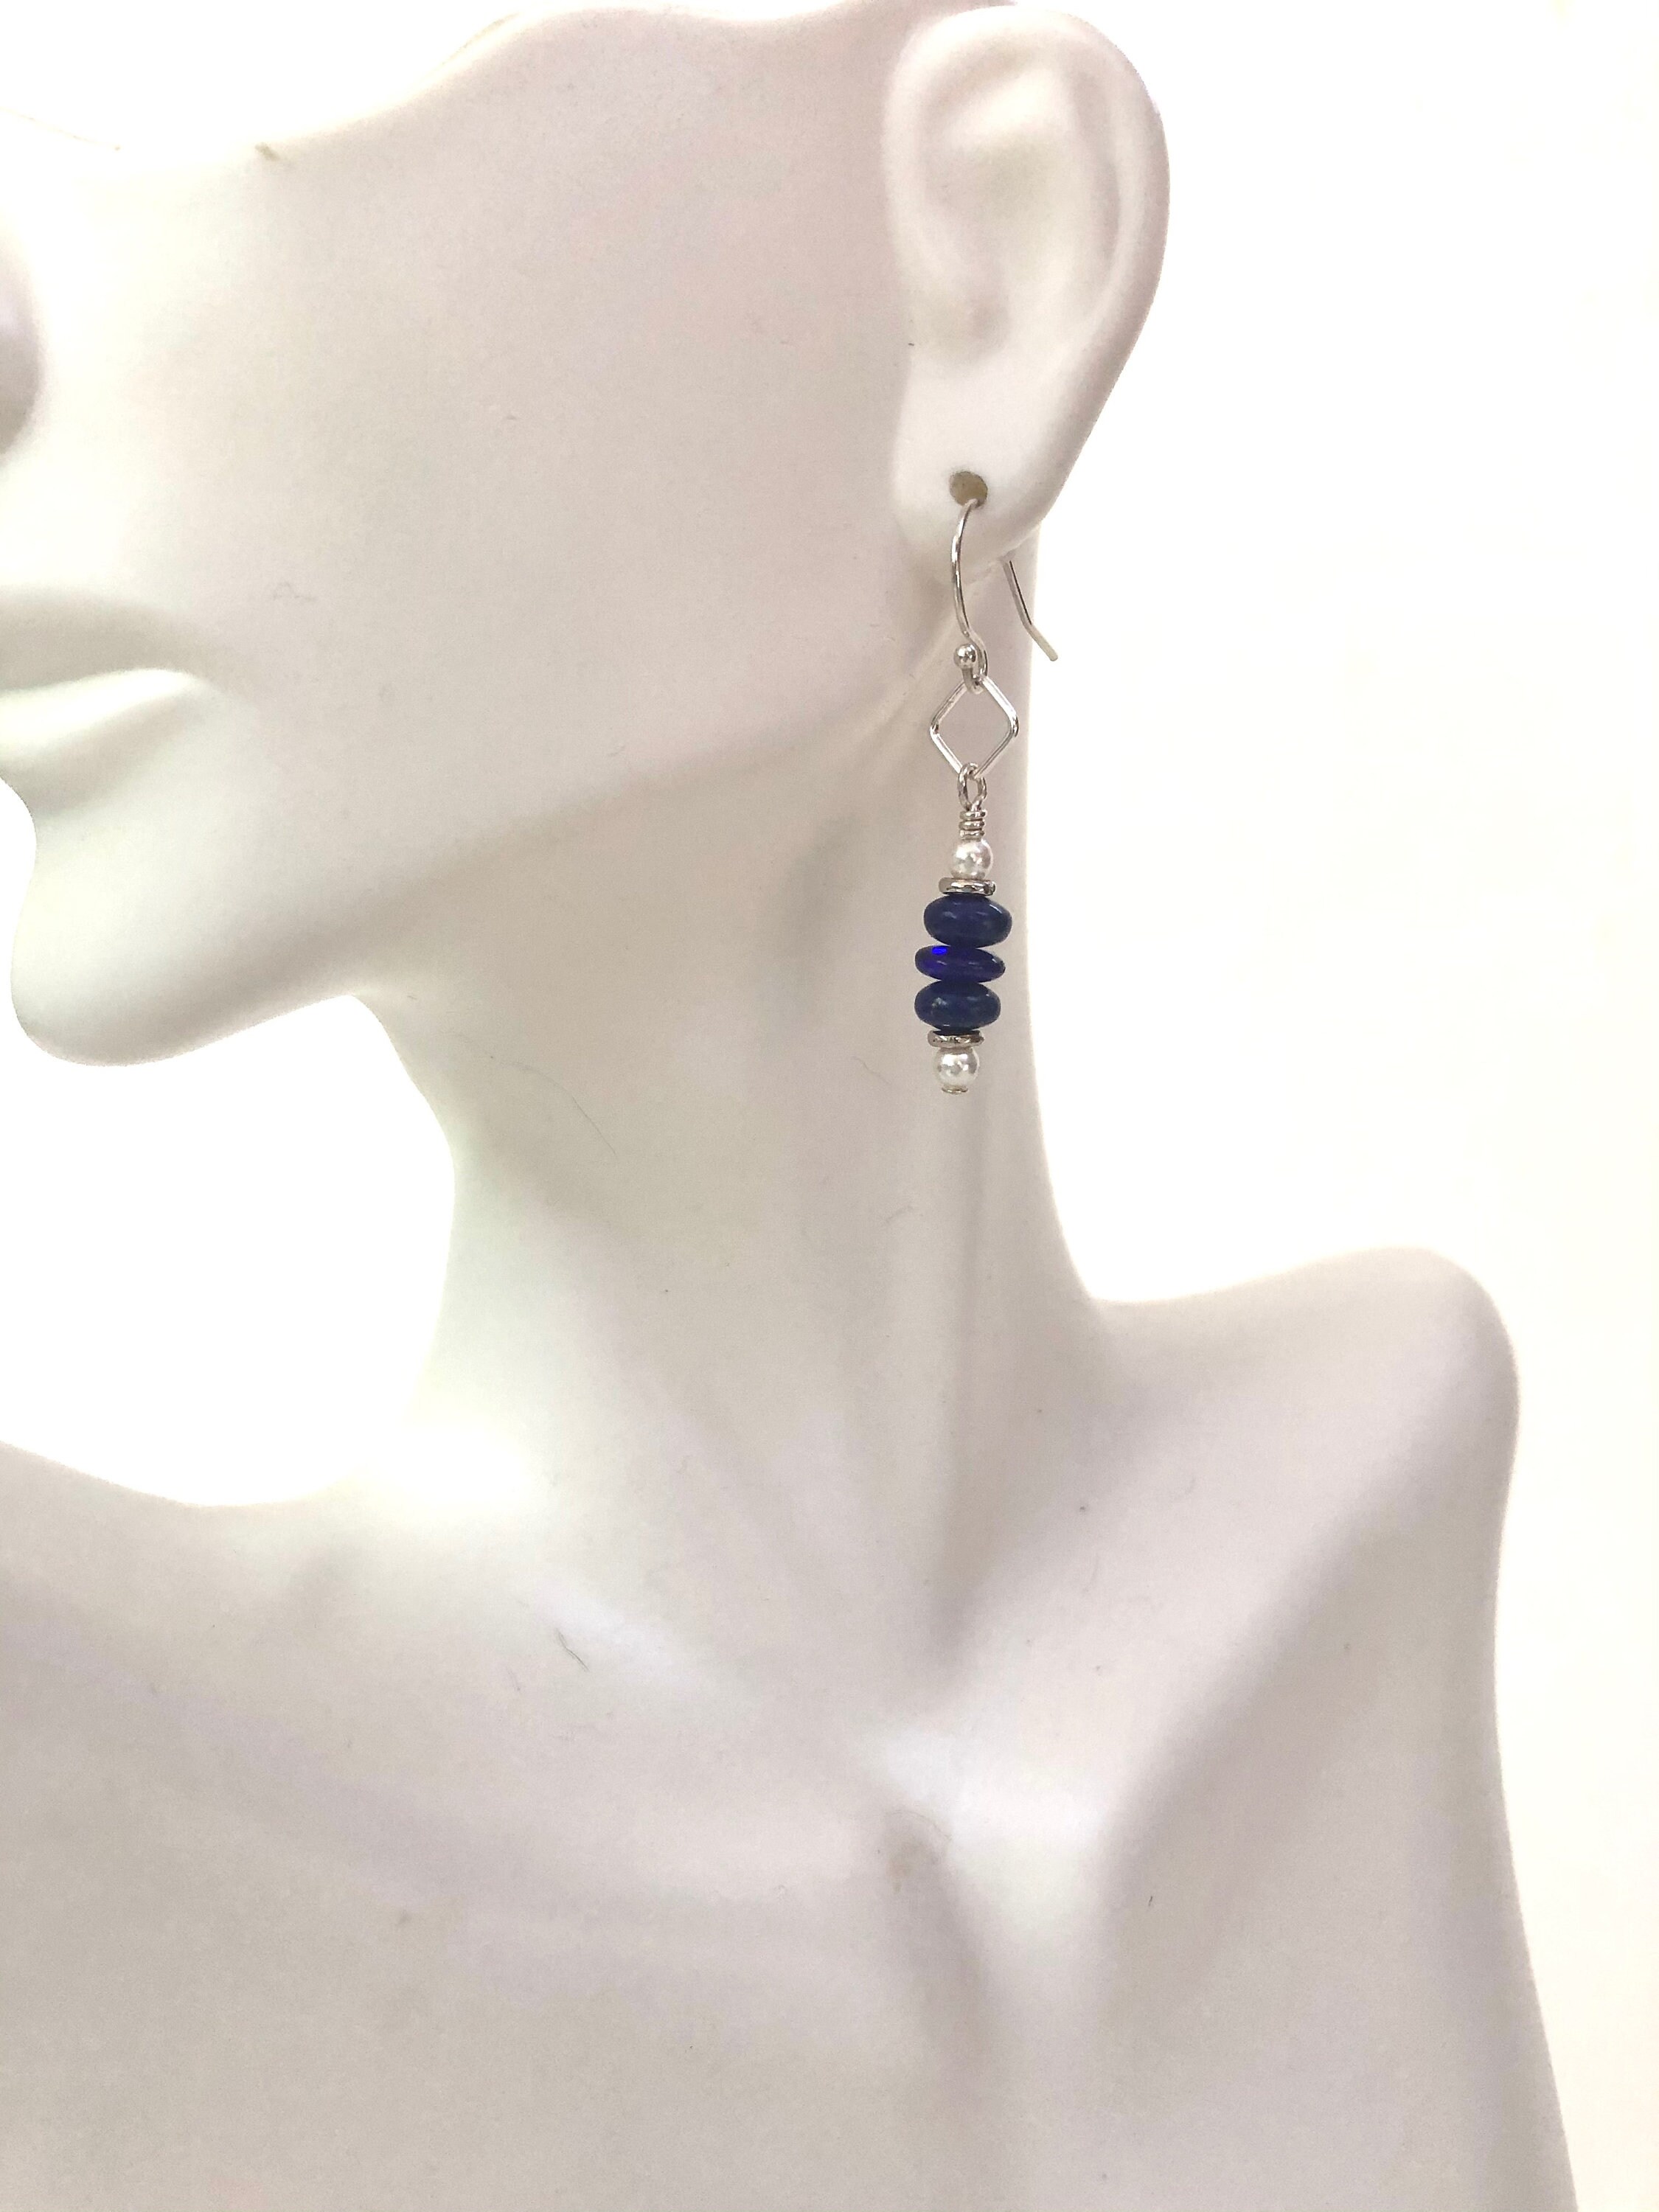 Stunning Lapis Lazuli Earrings Sterling Silver Earrings for | Etsy